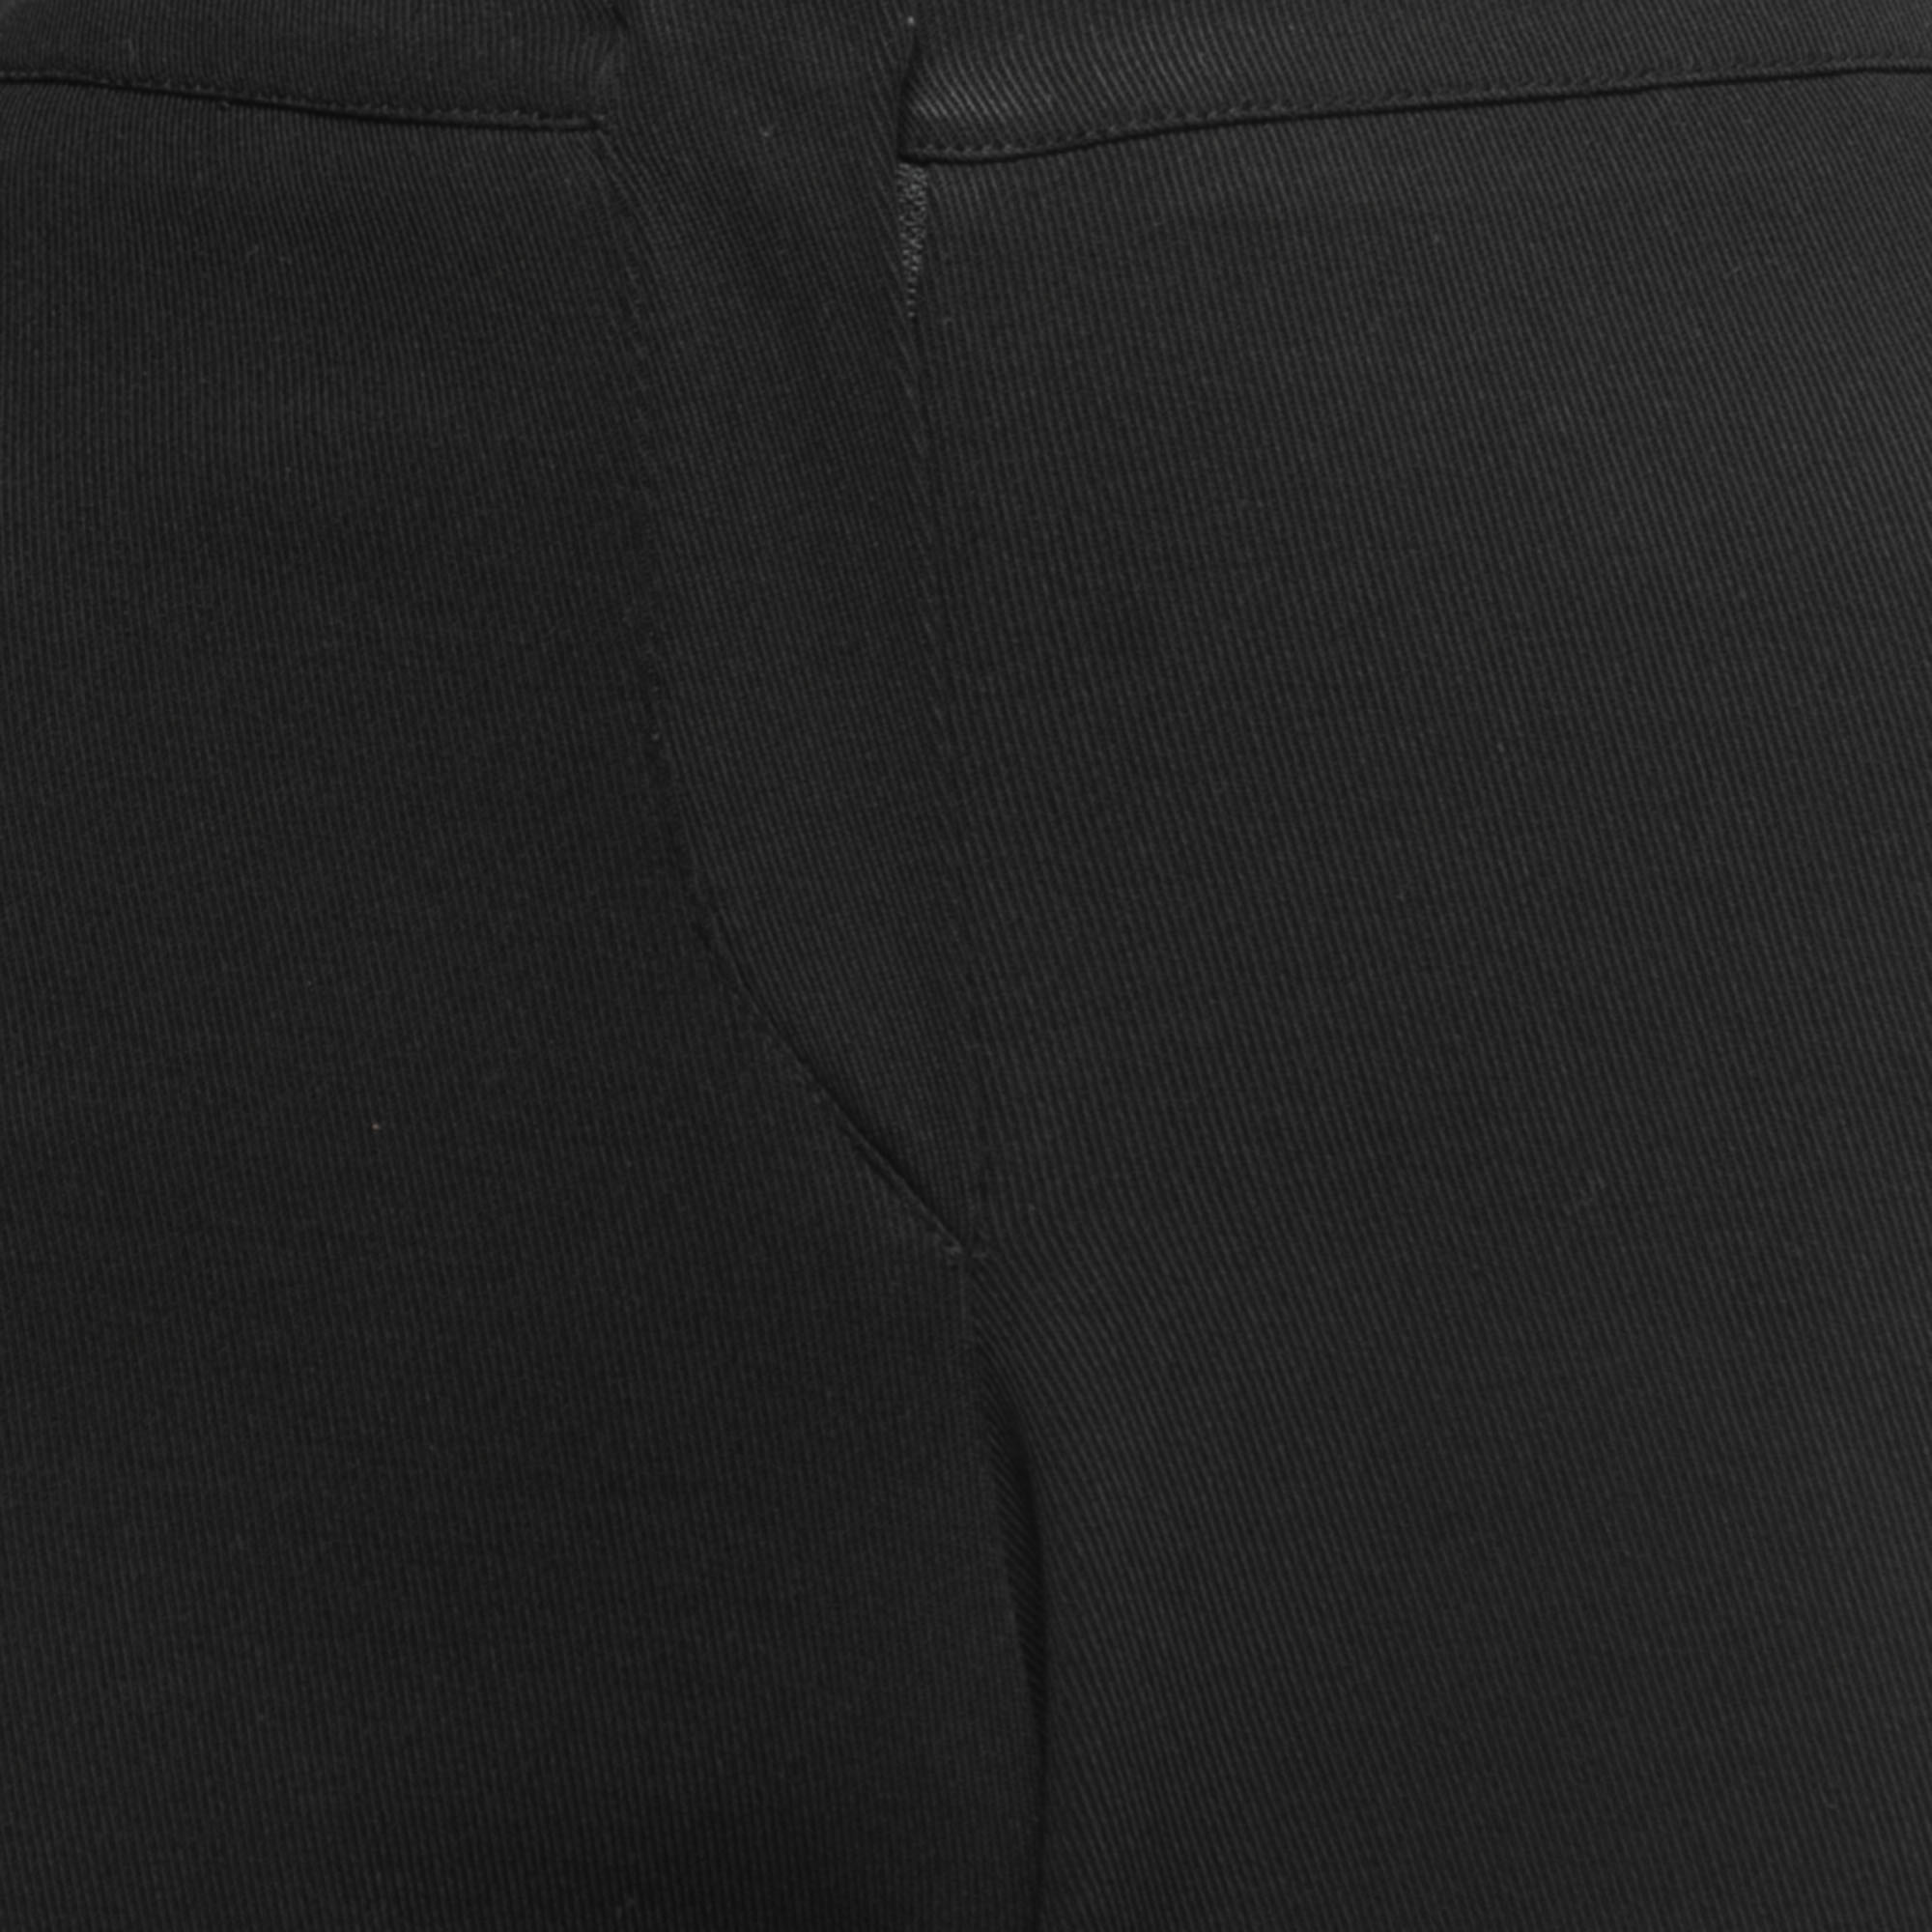 Emporio Armani Black Crepe Trousers L